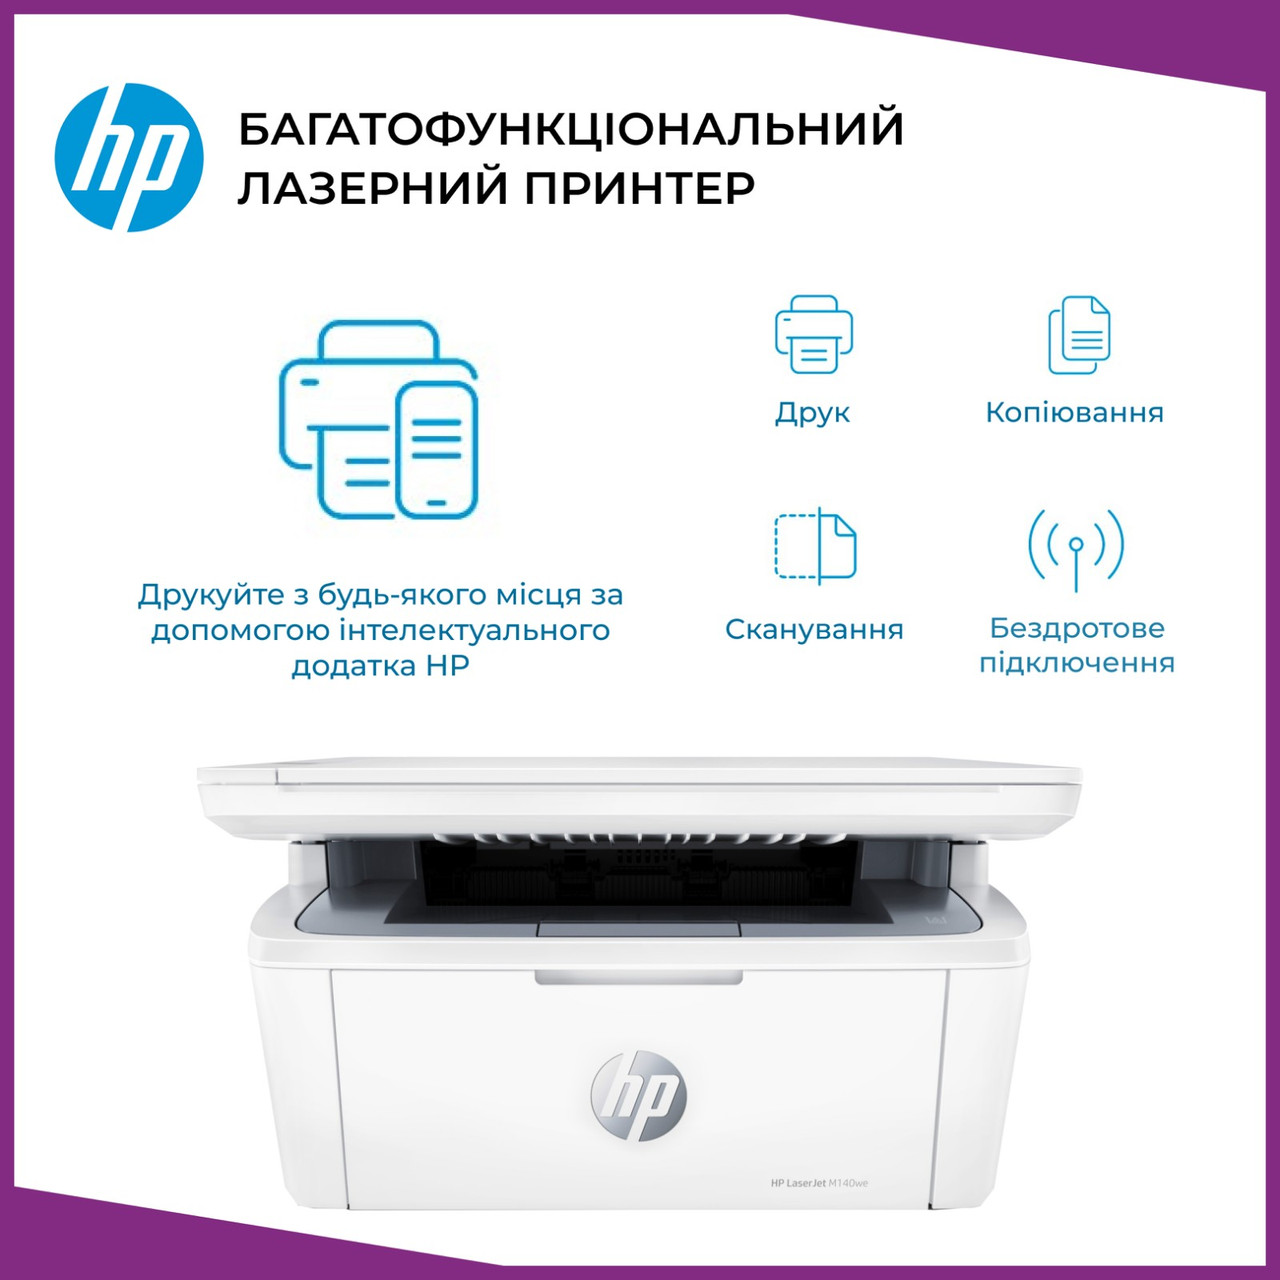 Принтер БФП лазерний HP Принтер сканер ксерокс 3 в 1 лазерний Лазерний чорно-білий принтер